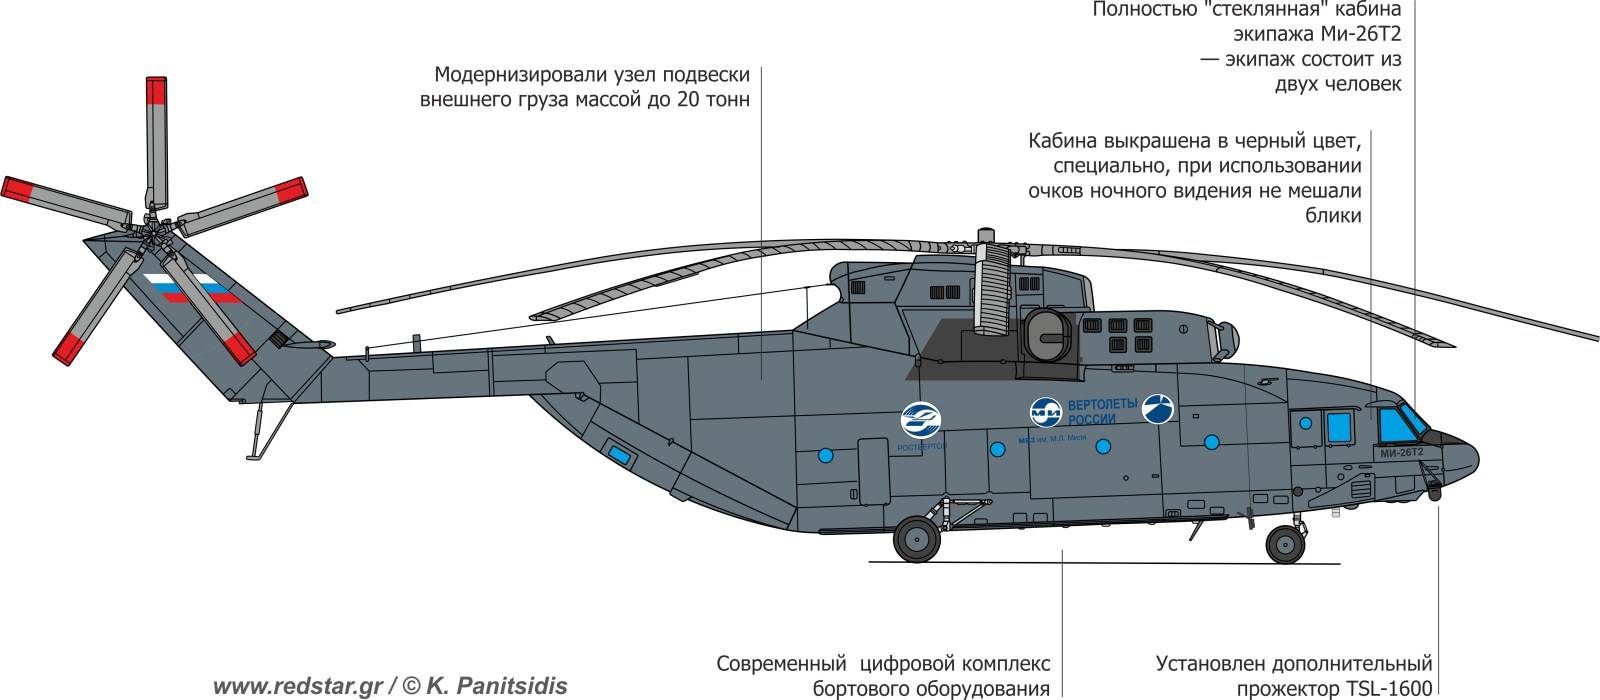 Царь-вертолет: новая модель ми-26